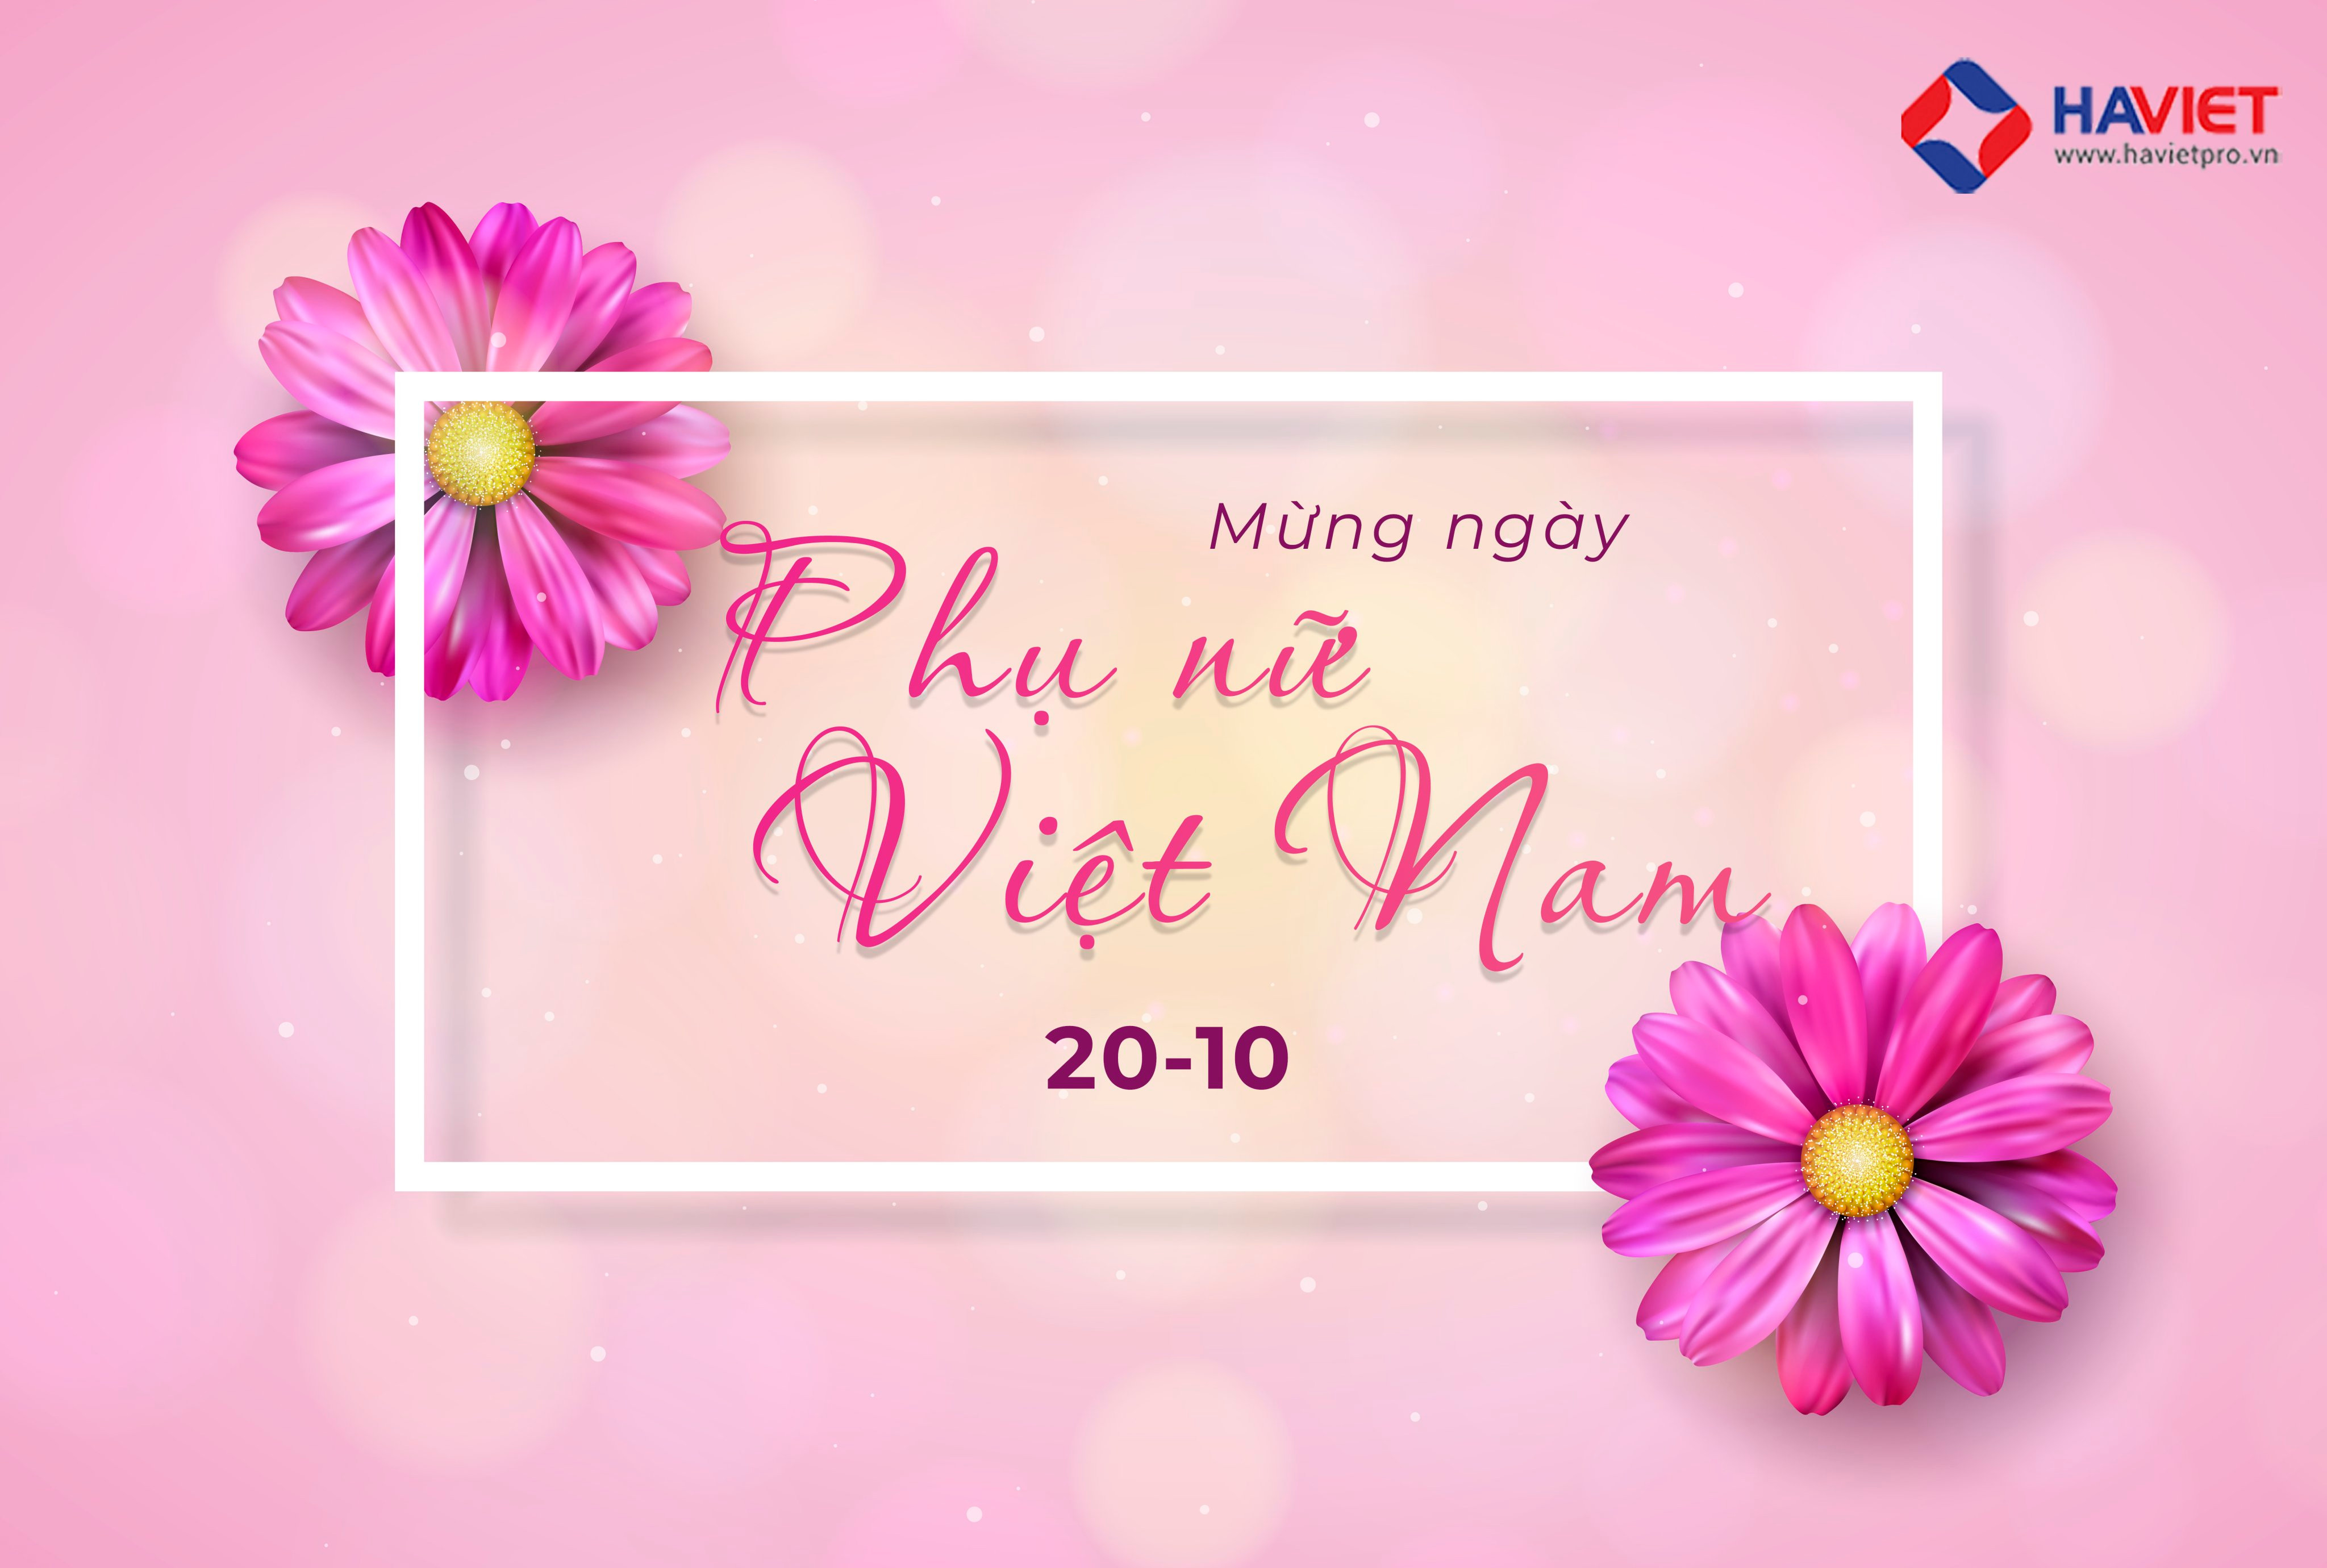 Hà Việt Pro Chúc Mừng Ngày Phụ Nữ Việt Nam 20-10